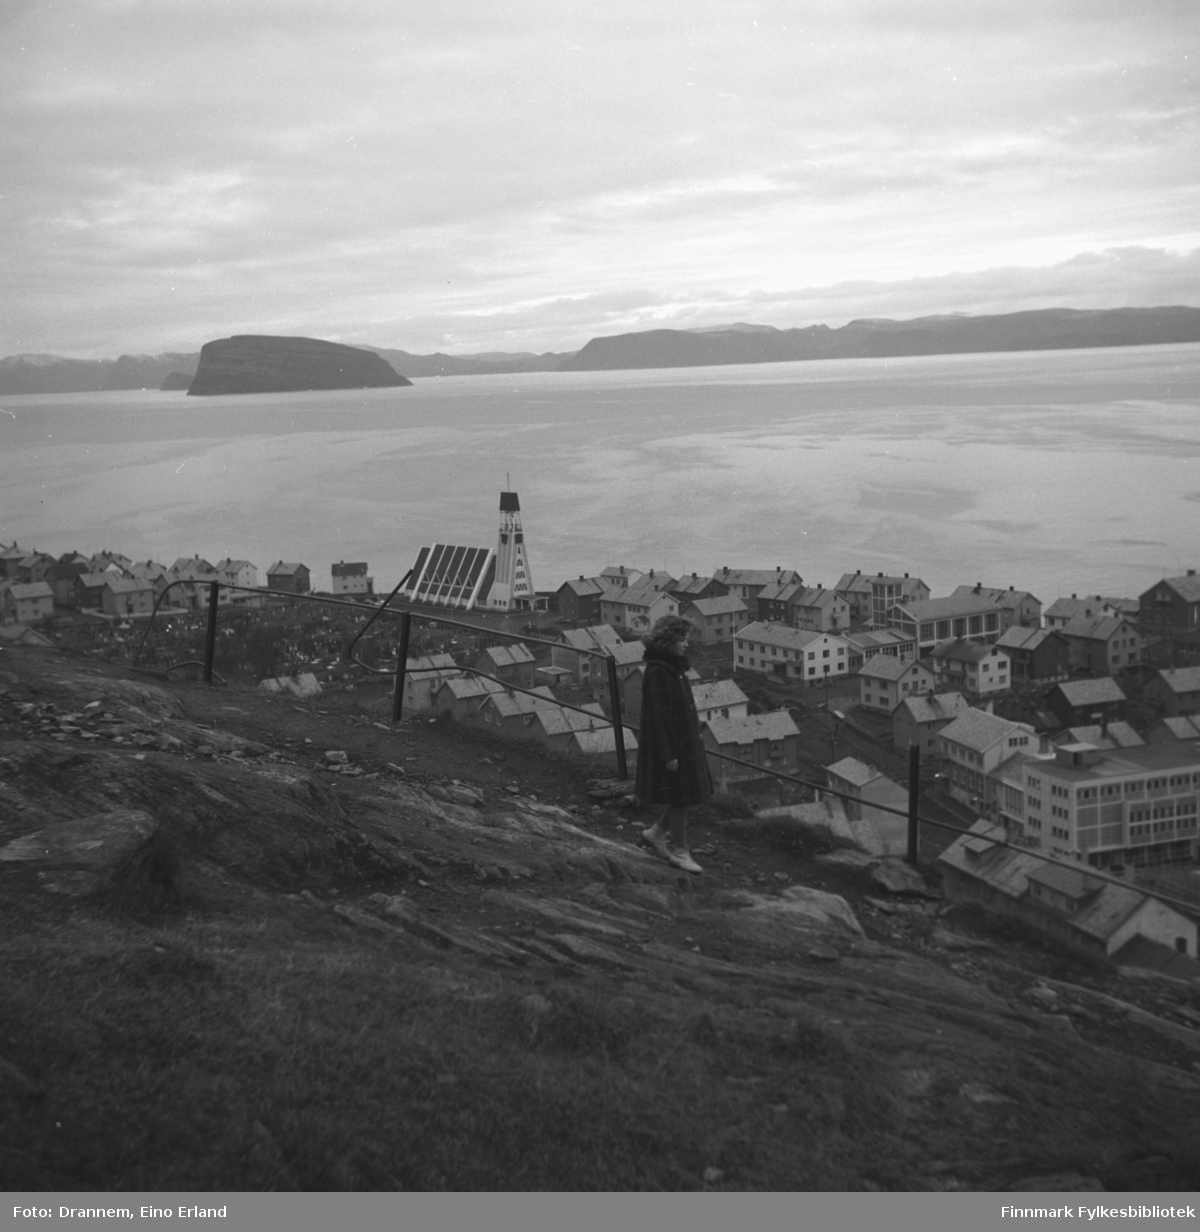 Oversiktsbilde over Hammerfest sentrum/Haugen tatt fra fjellet Salen. Øya Håja ses i bakgrunnen.